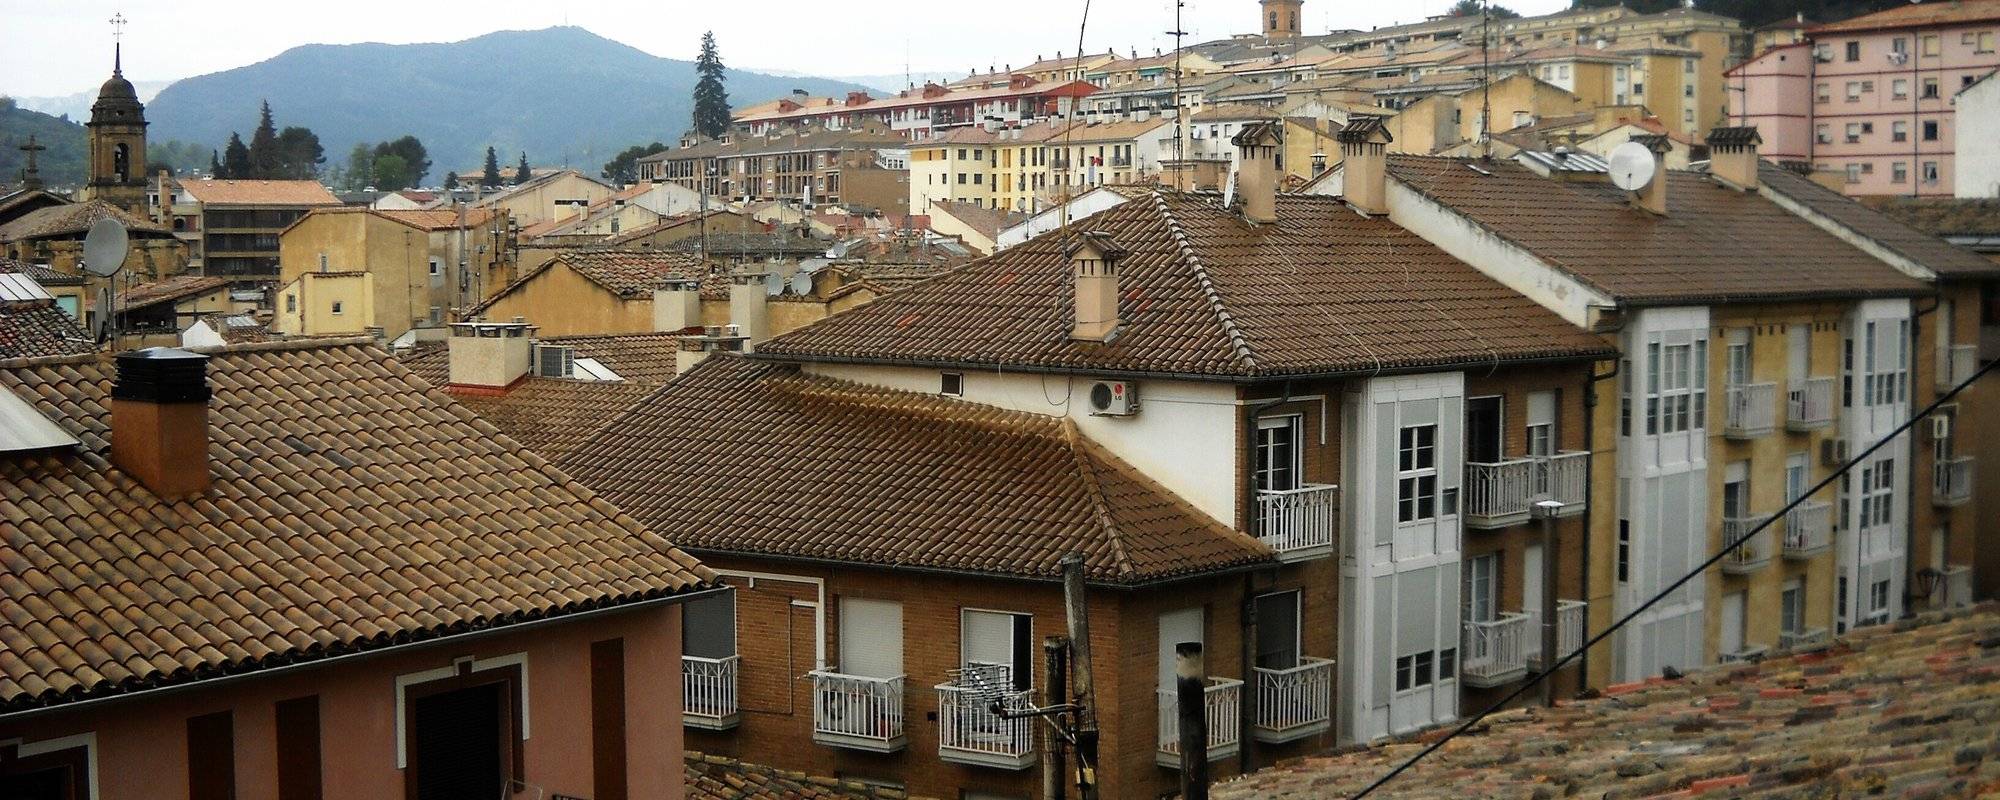 Towns of the Santiago's Road: Estella (Lizarra)